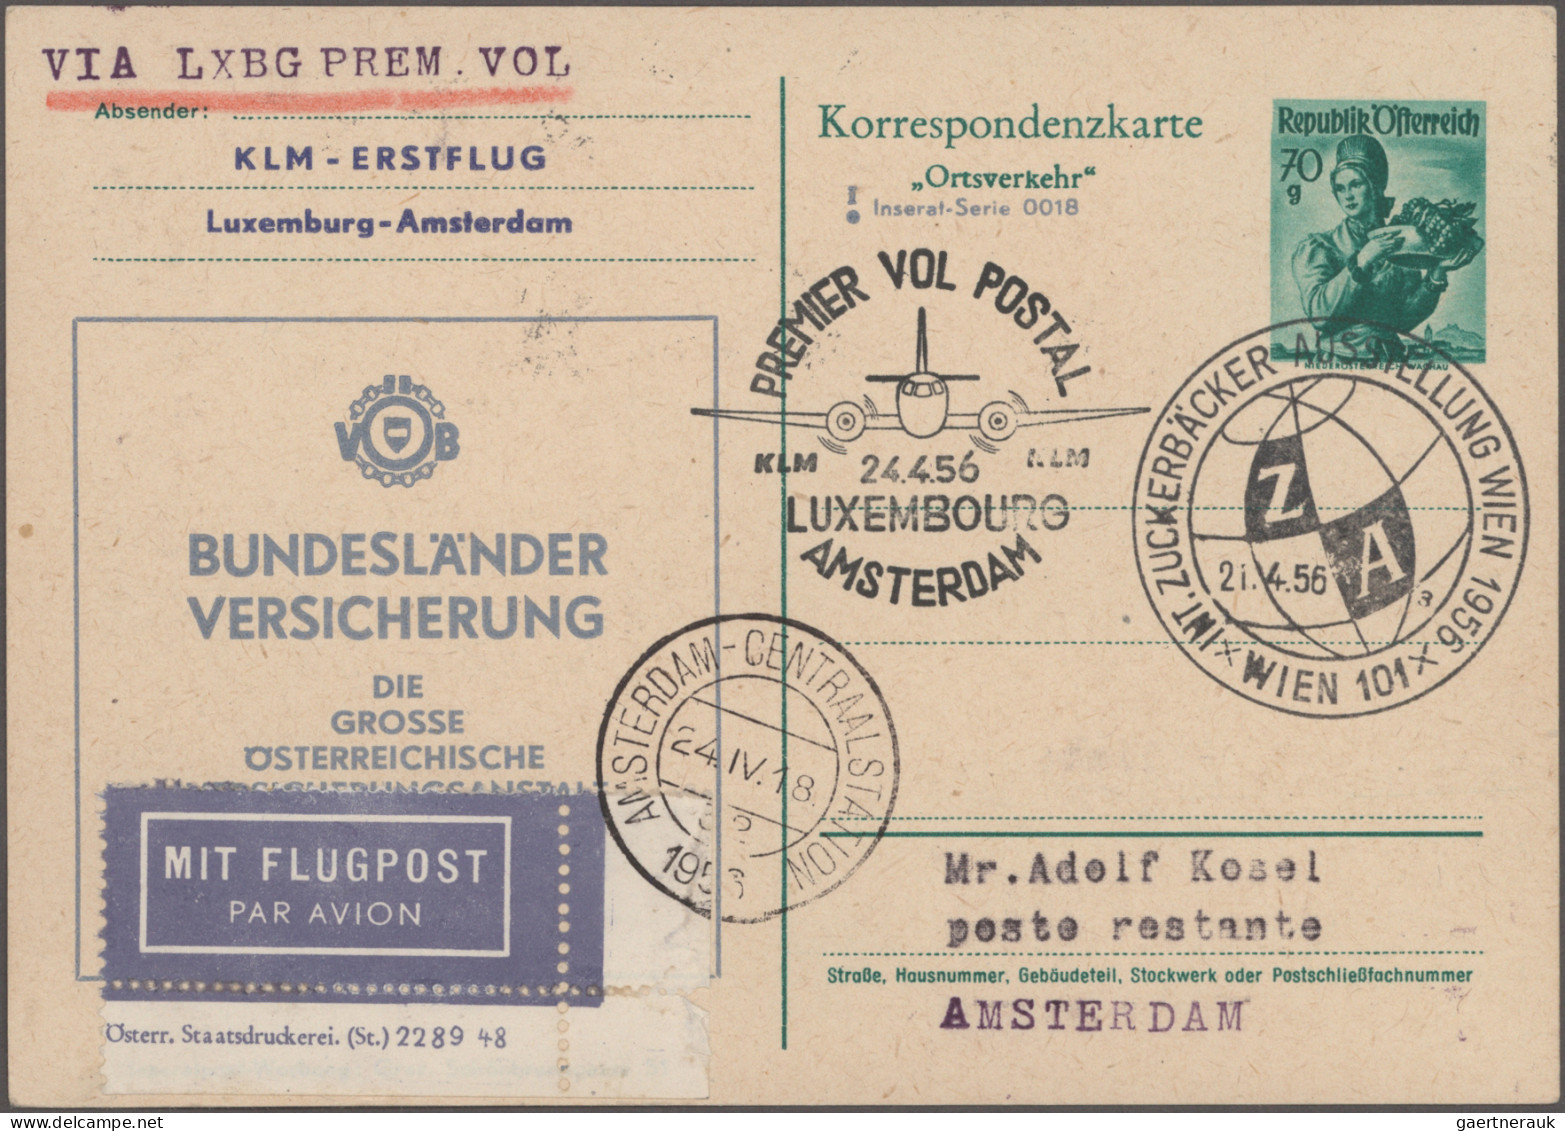 Airmail - Europe: 1958/1960, Sammlung von 167 Briefen und Karten AUSTRIA AIRLINE